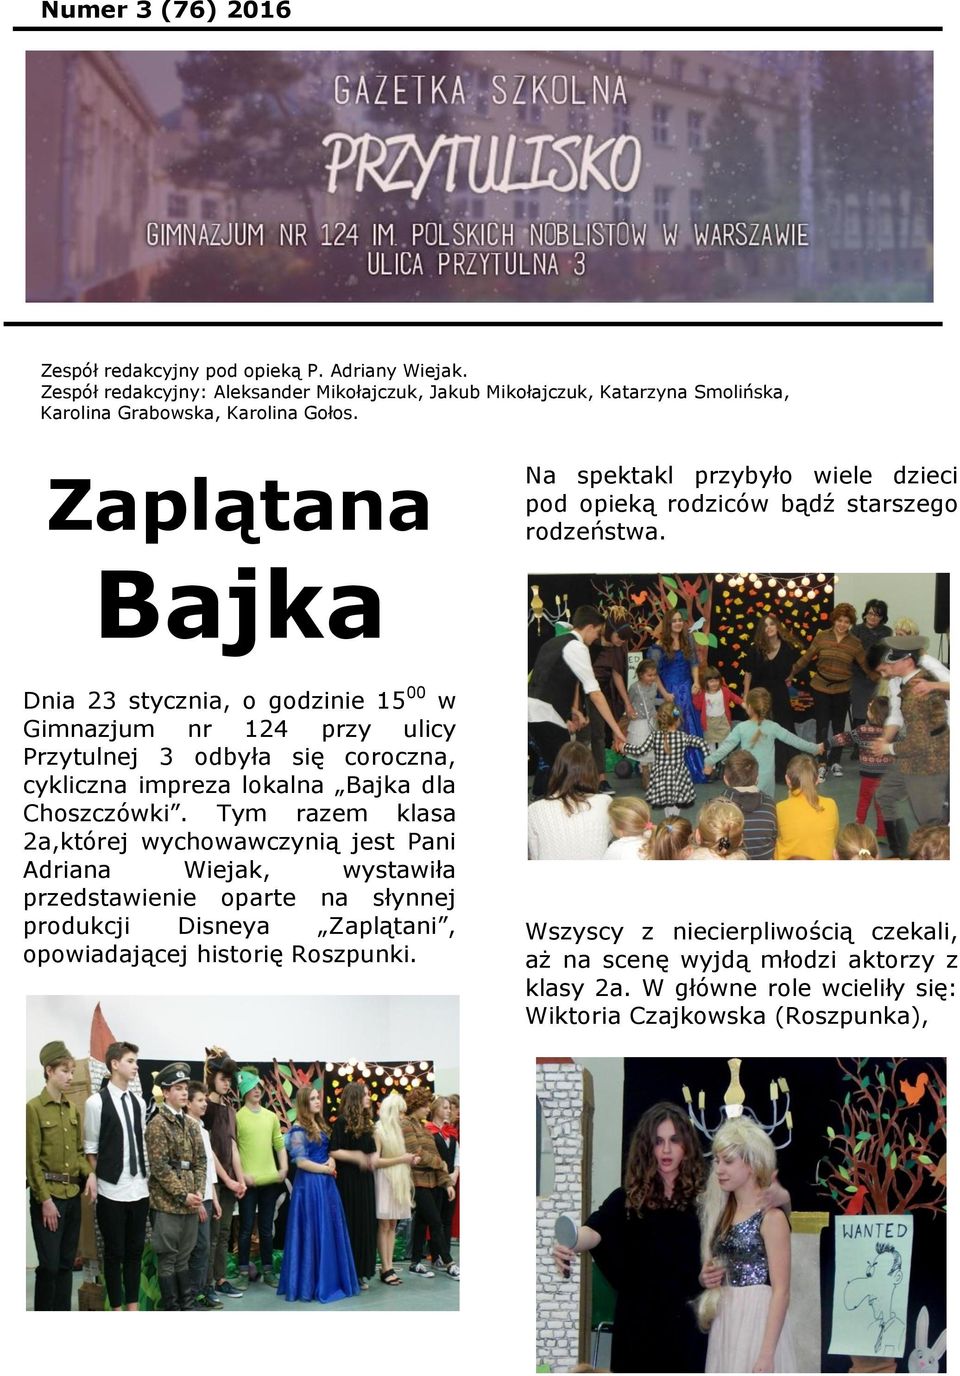 Bajka Dnia 23 stycznia, o godzinie 15 00 w Gimnazjum nr 124 przy ulicy Przytulnej 3 odbyła się coroczna, cykliczna impreza lokalna Bajka dla Choszczówki.